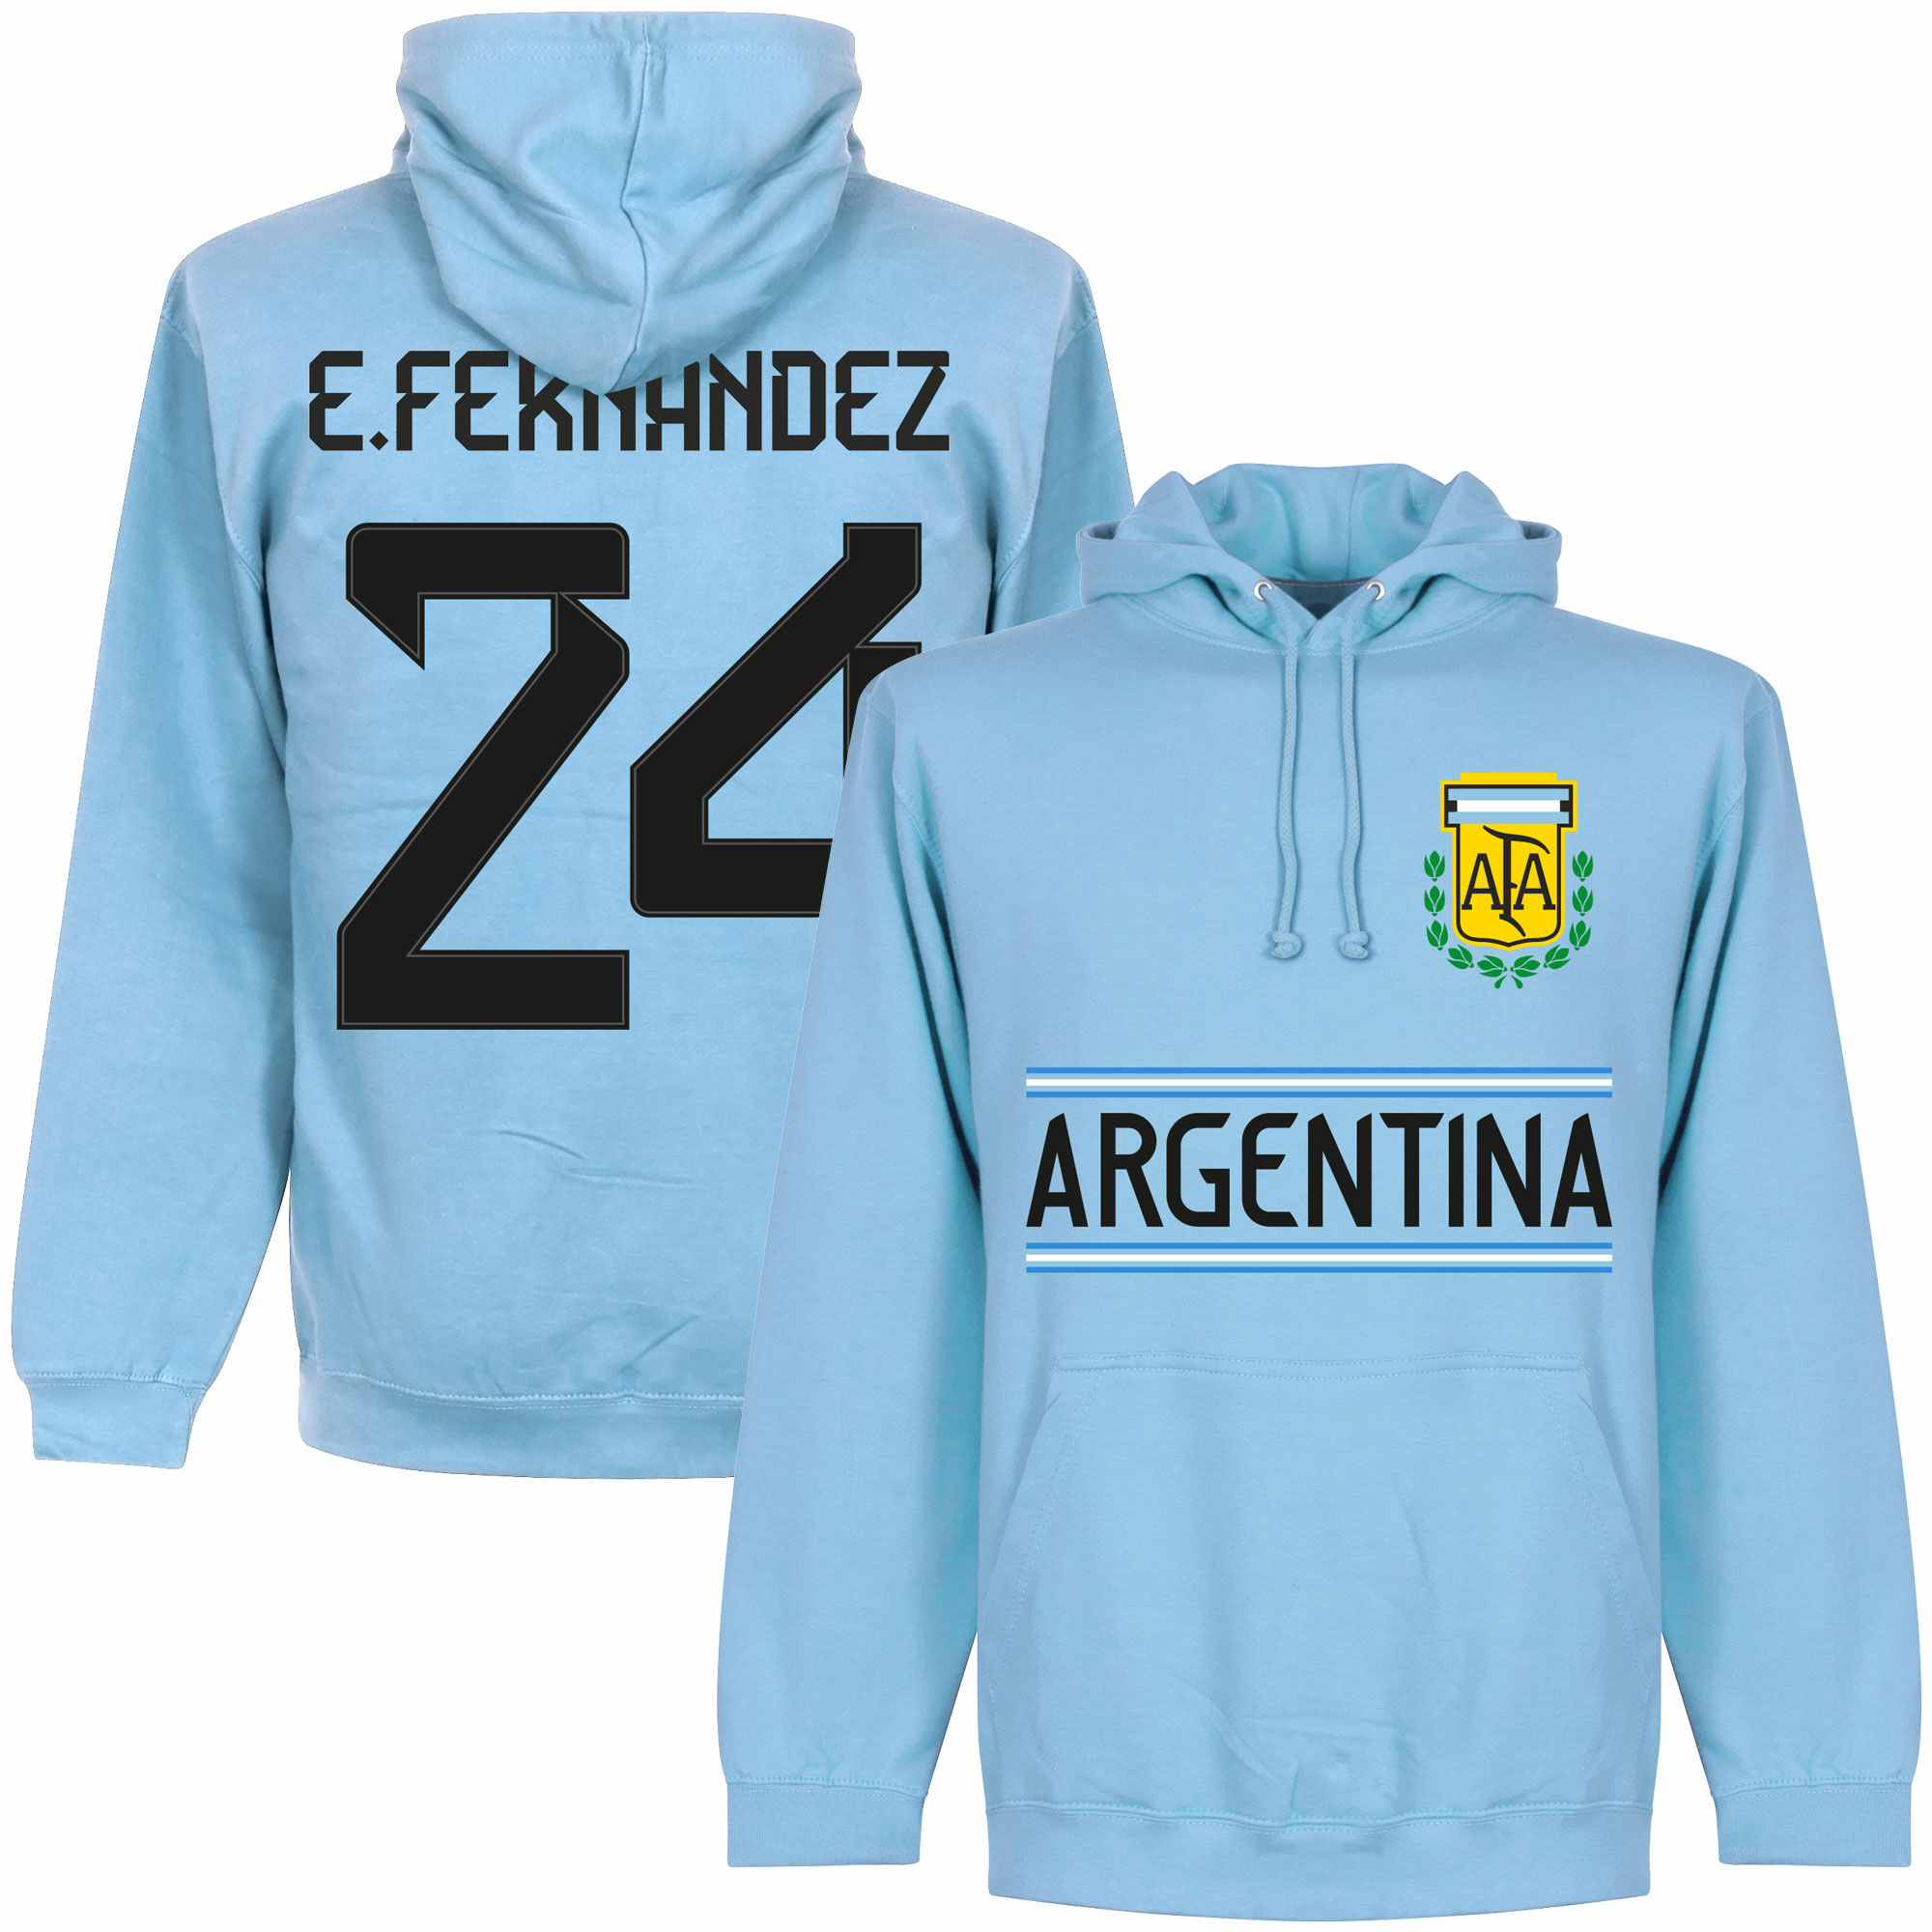 Argentina - Mikina s kapucí - modrá, Enzo Fernández, číslo 24